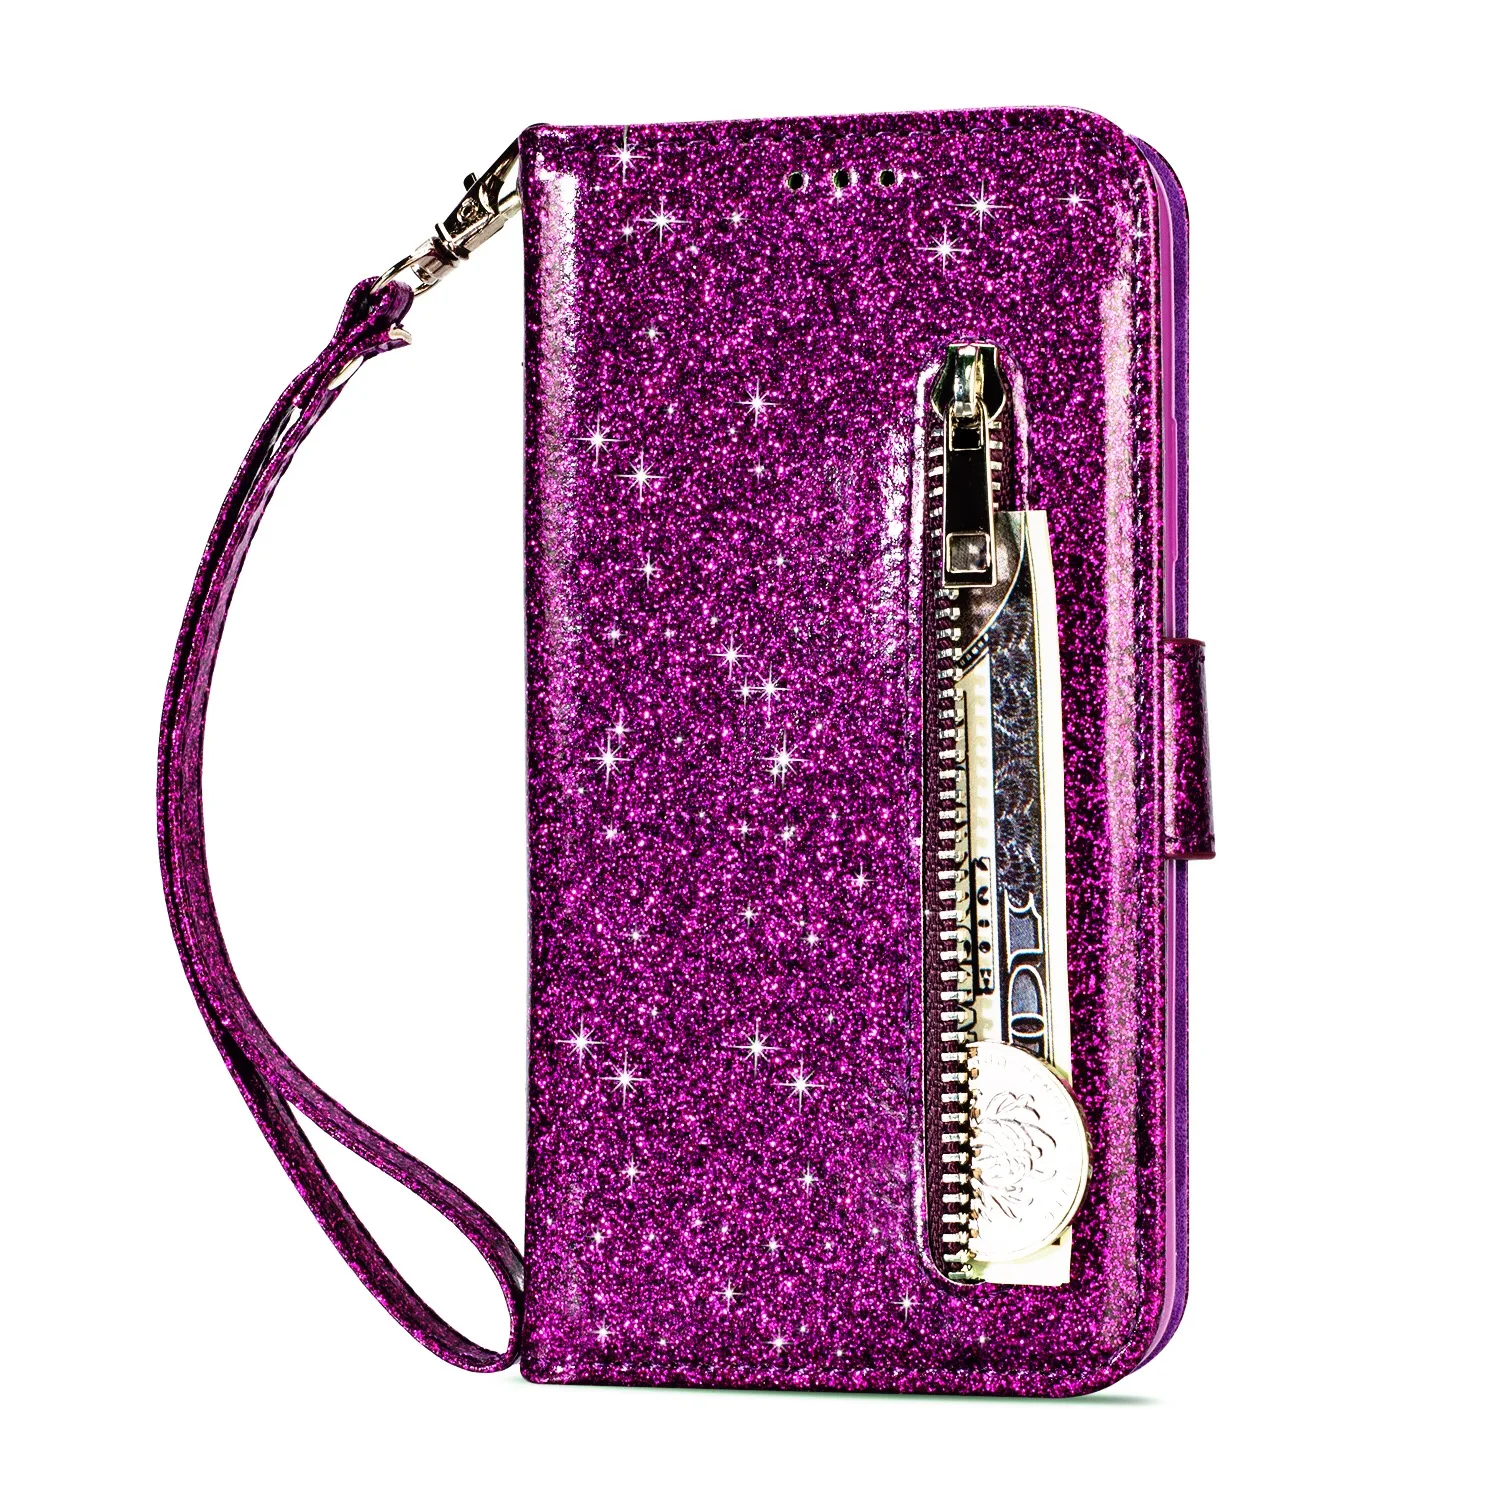 Роскошный чехол сверкающий с блестками для LG K10 кожаный бумажник чехол для телефона Флип Бумажник кожаный чехол для LG K8 K8 K10 - Цвет: Purple